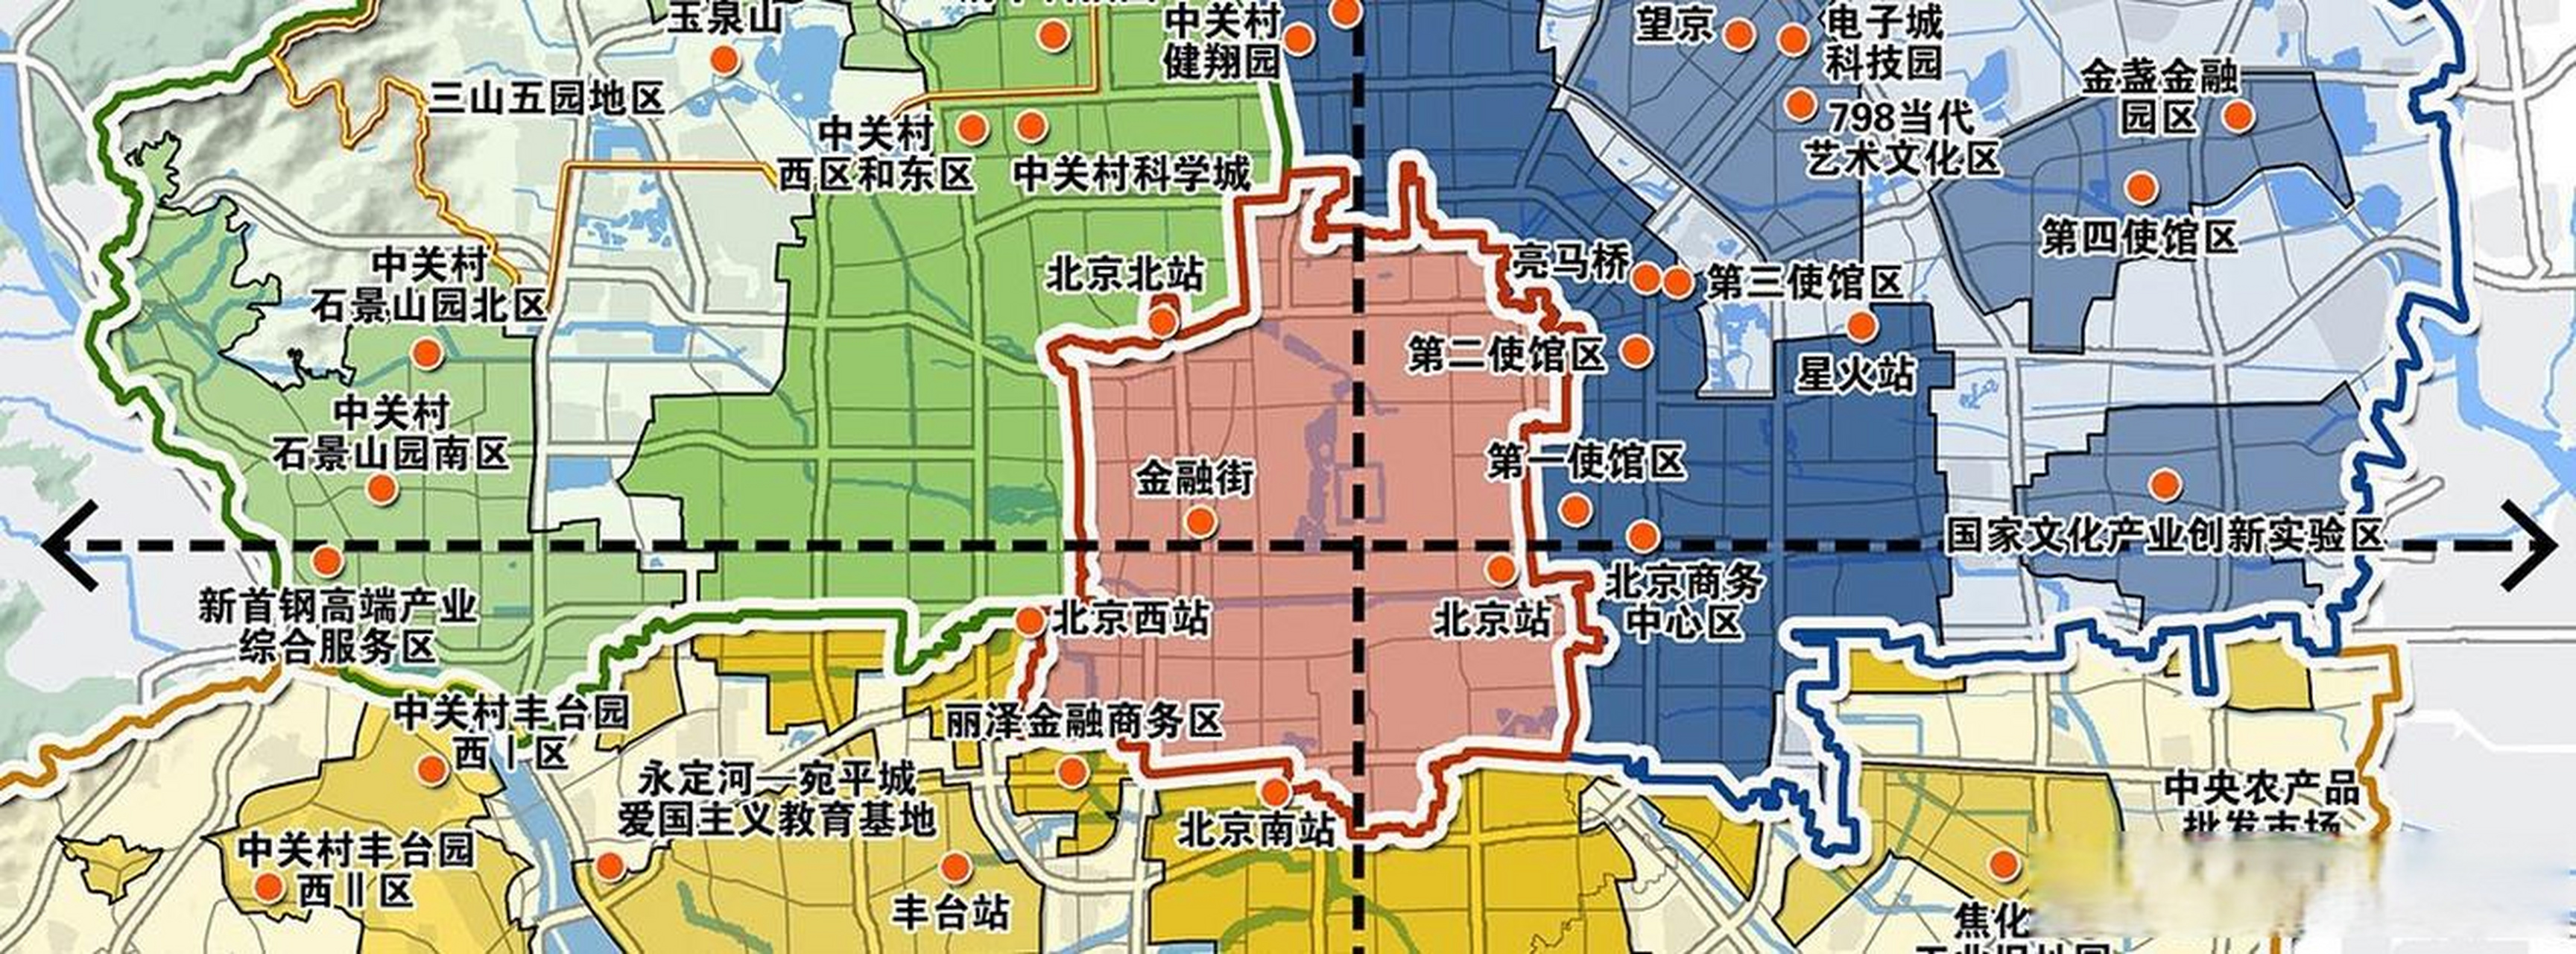 根据北京最新的总体规划,未来沿长安街分布着一系列重要的节点,包括